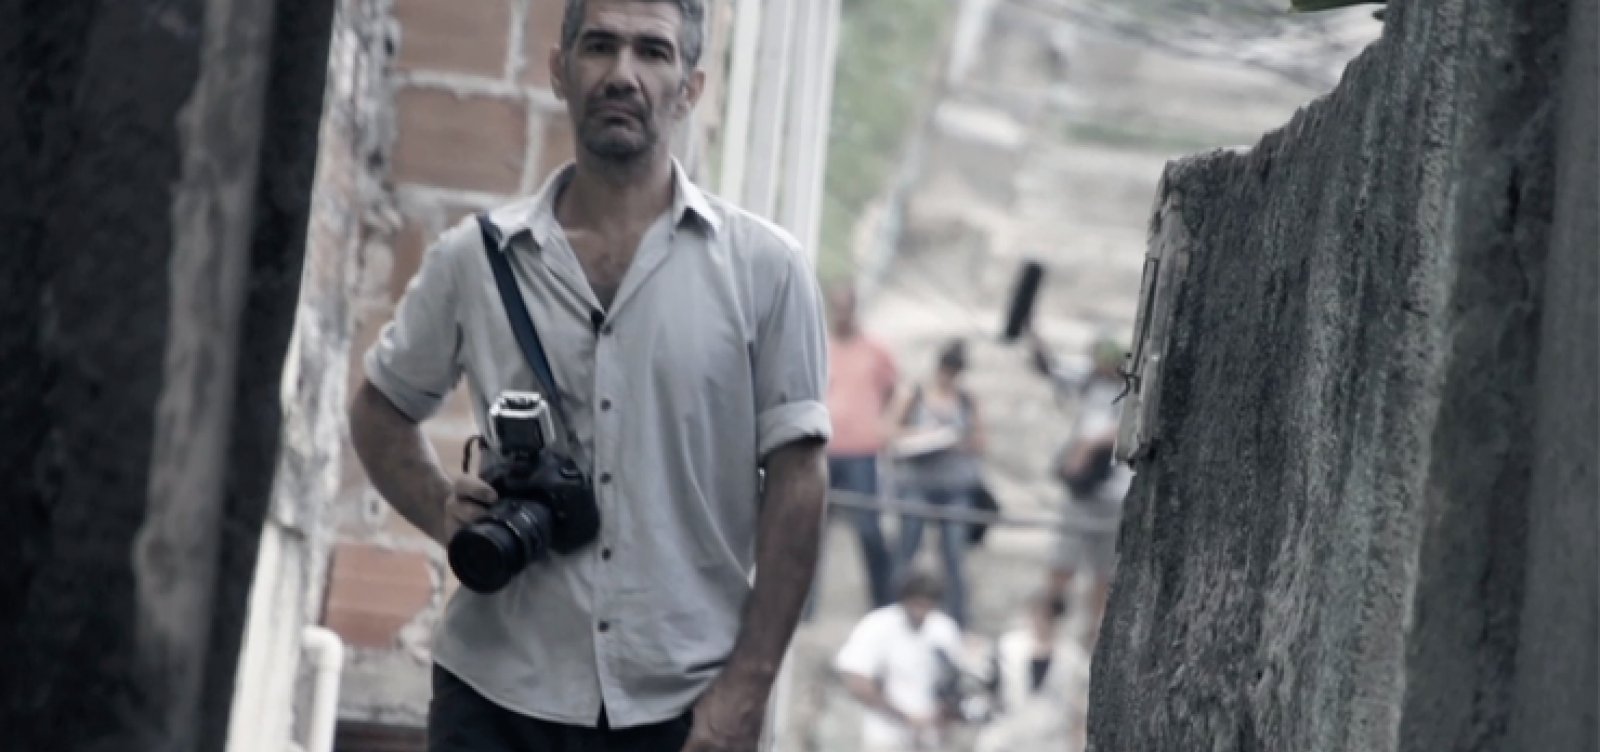 Fotojornalista das causas sociais, Rogério Ferrari morre, aos 56 anos, em Salvador